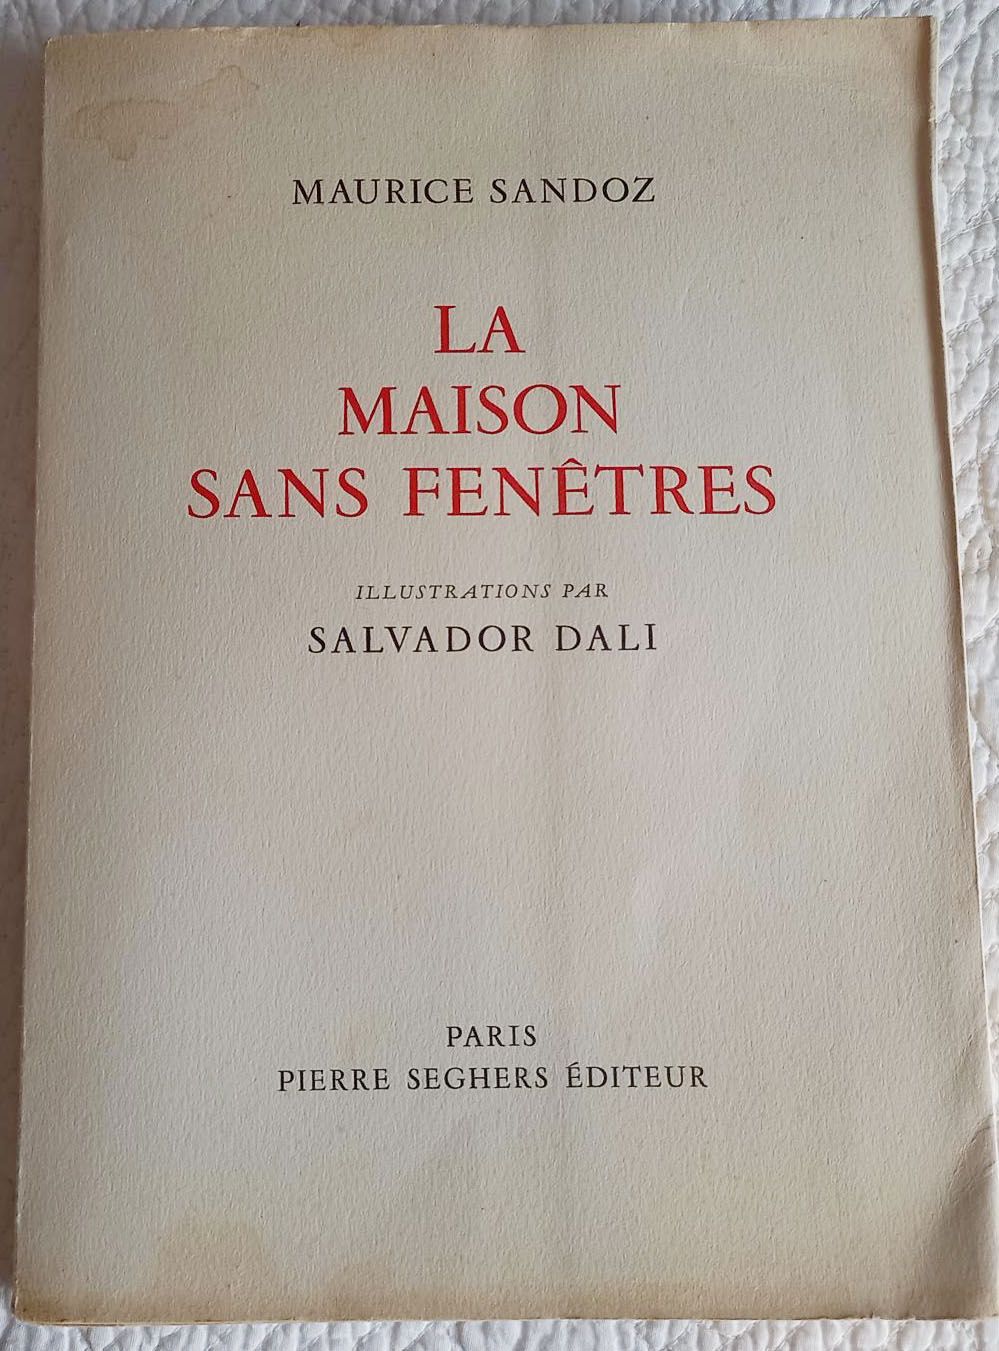 Maurice Sandoz 1959406075